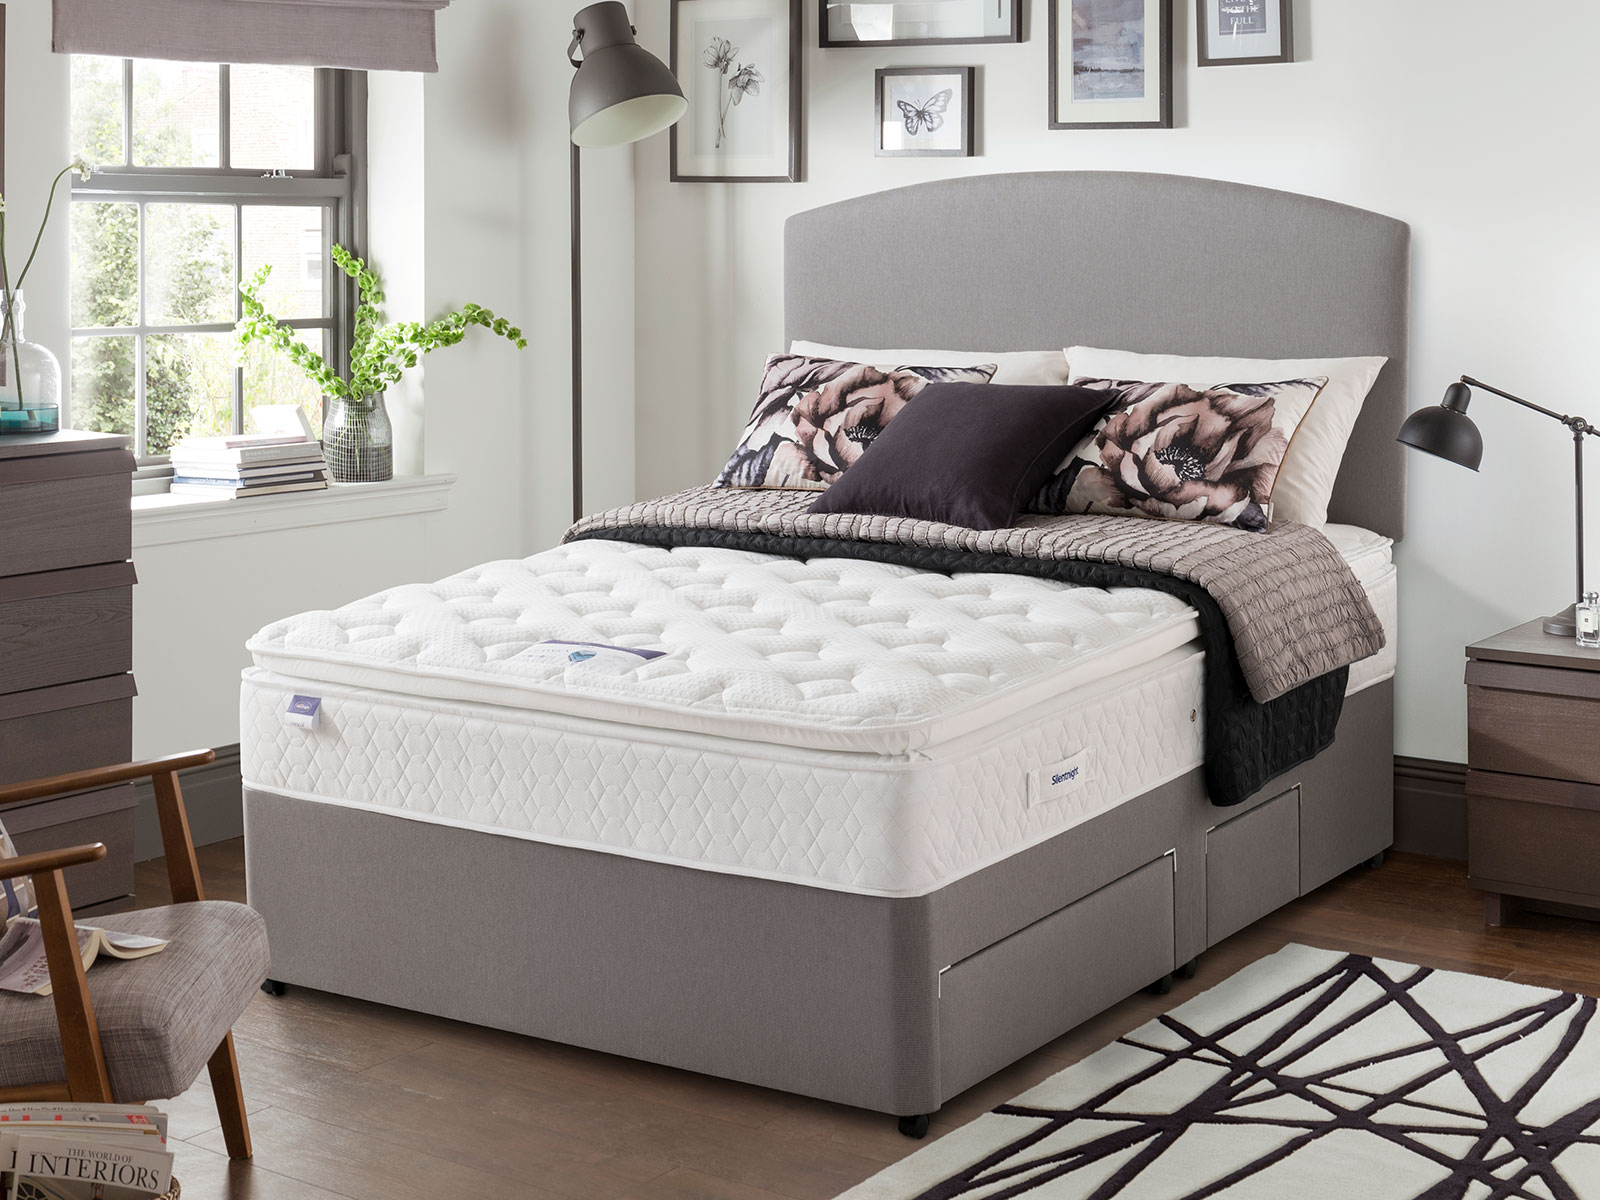 silentnight miracoil 3 pillow top mattress